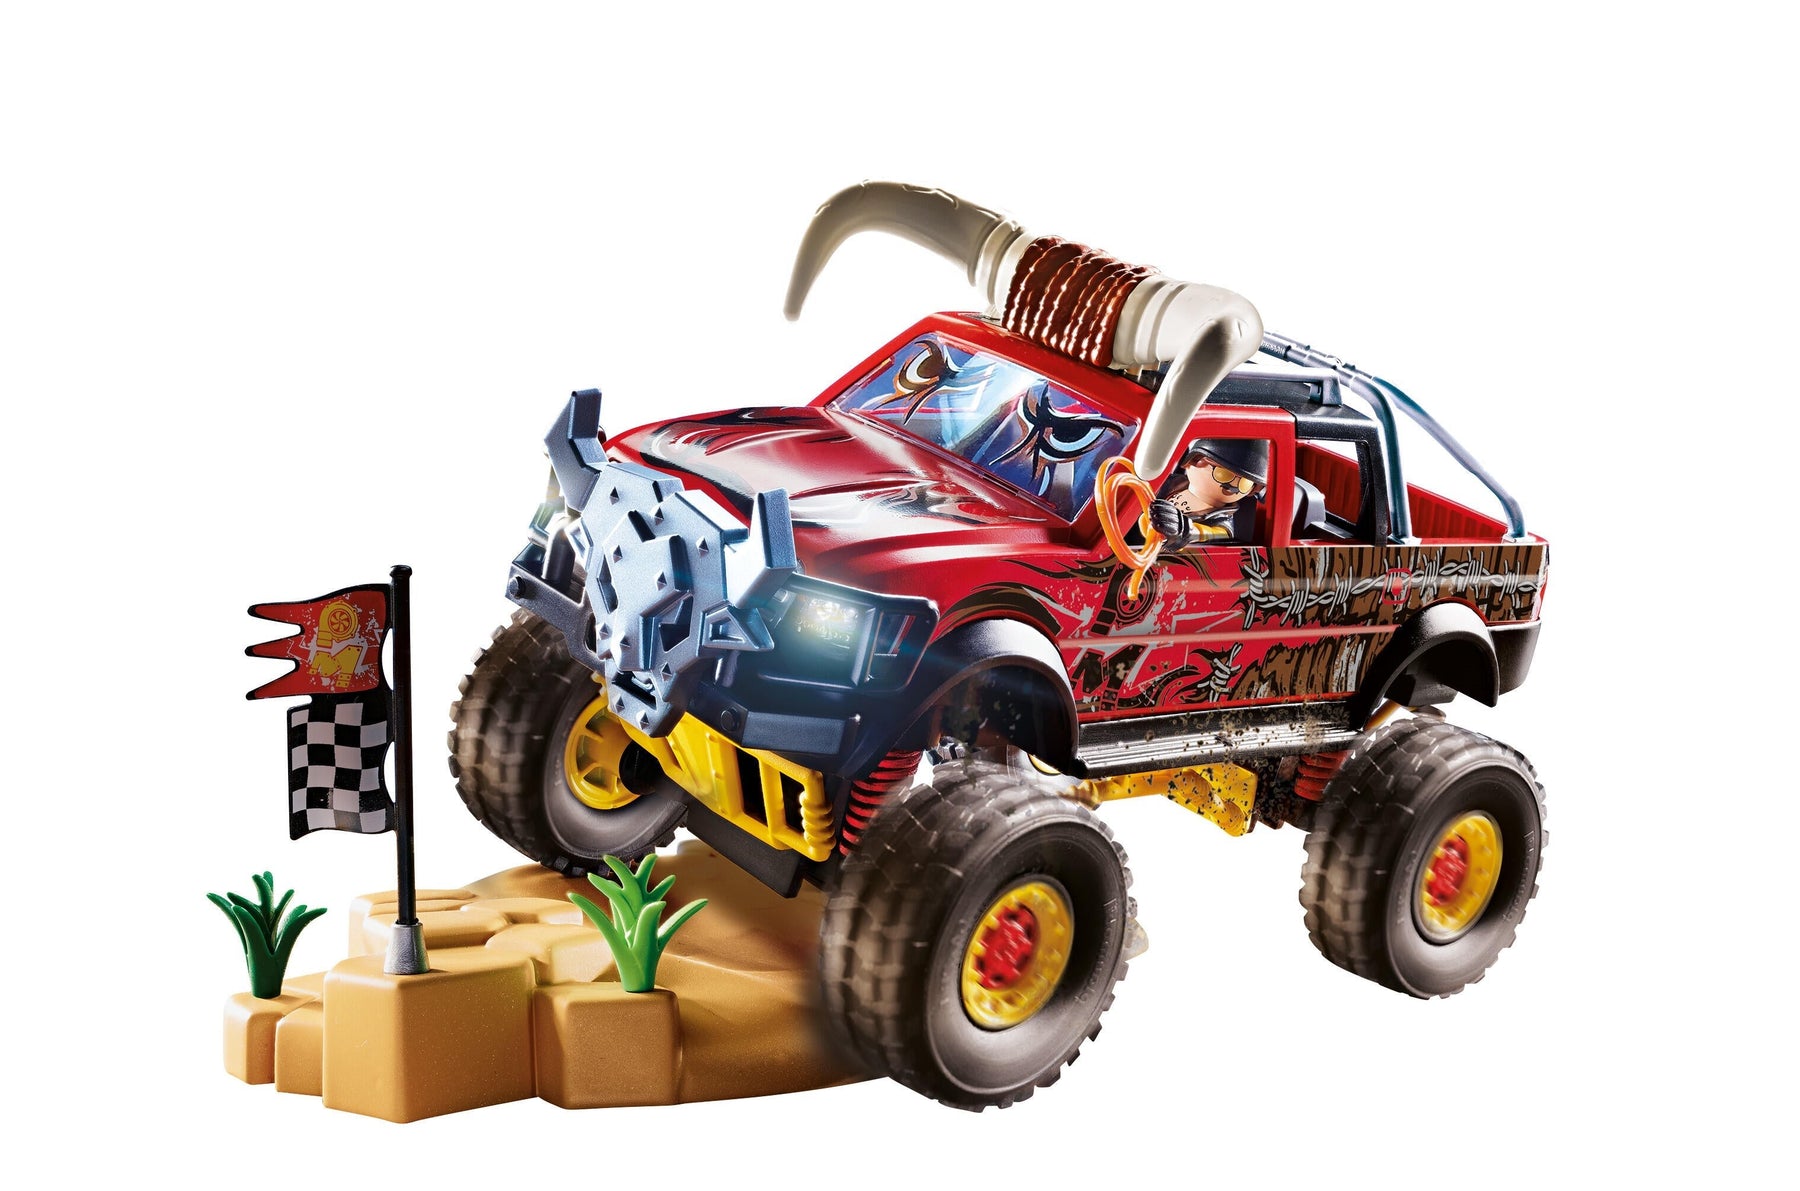 Playmobil Stunt Show Bull Monster Truck The Little Things